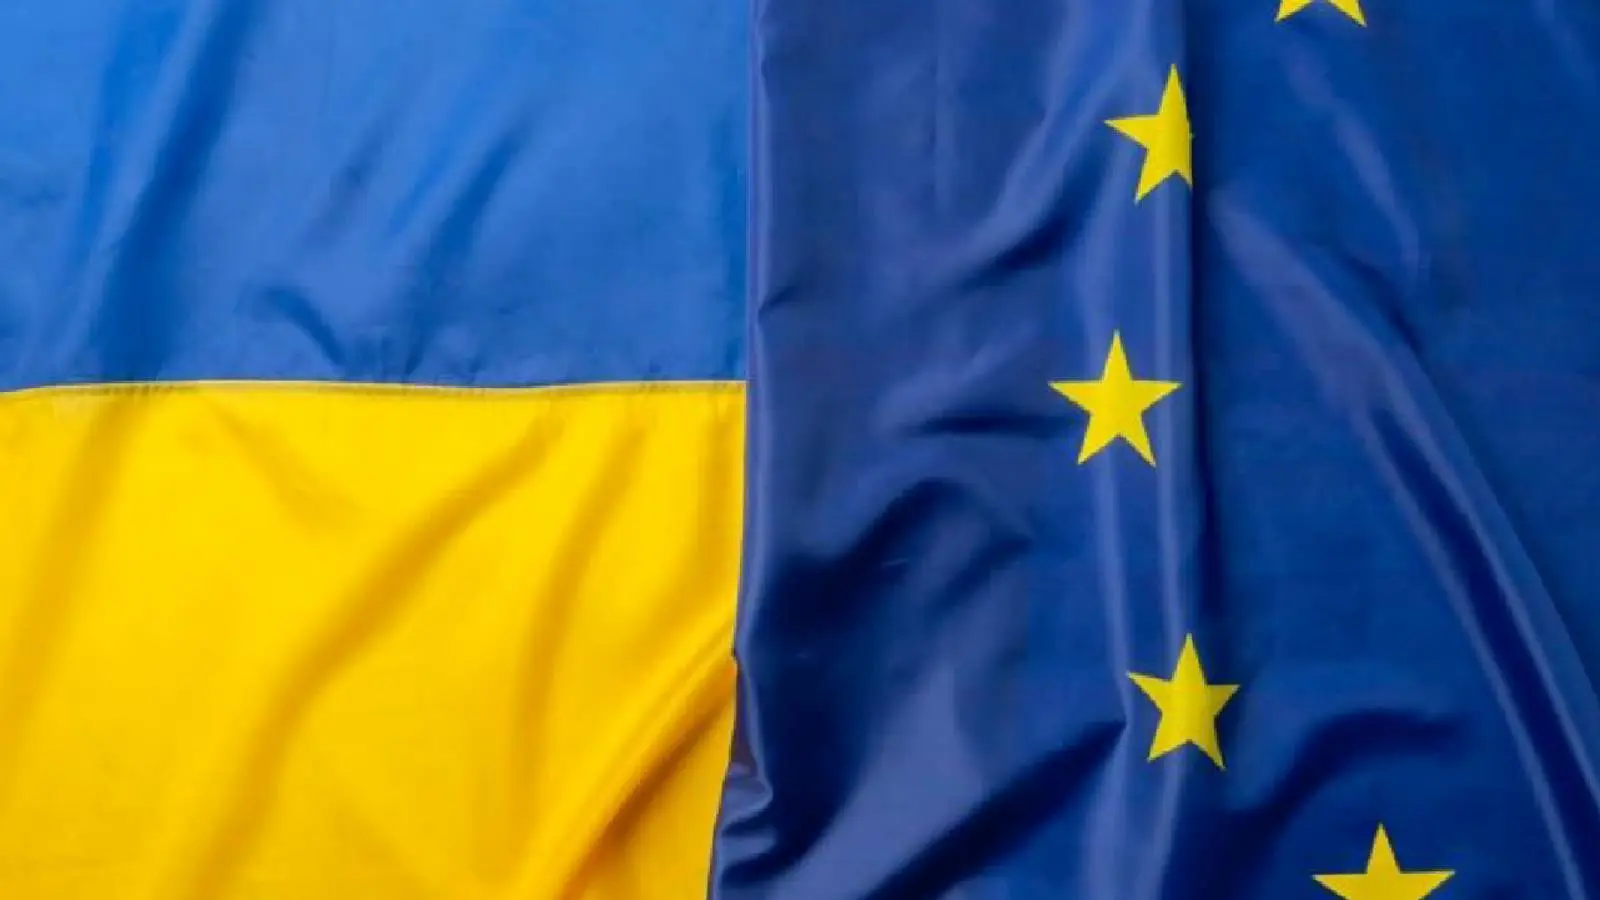 De ce ii Este Frica Europei sa Transfere in Ucraina Activele Rusesti Inghetate